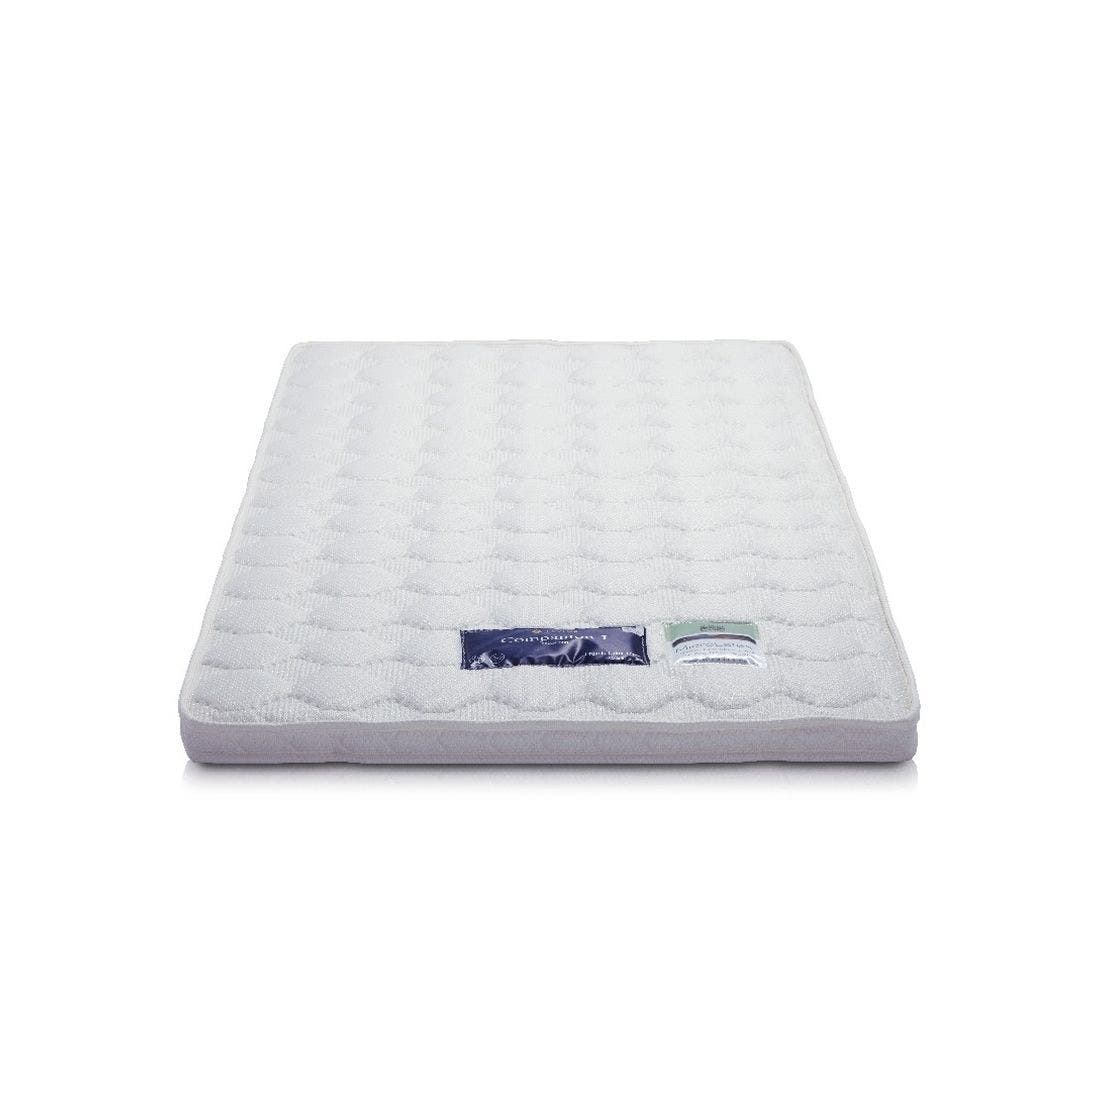 39005023-mattress-bedding-mattress-pads-protectors-mattress-pads-toppers-01